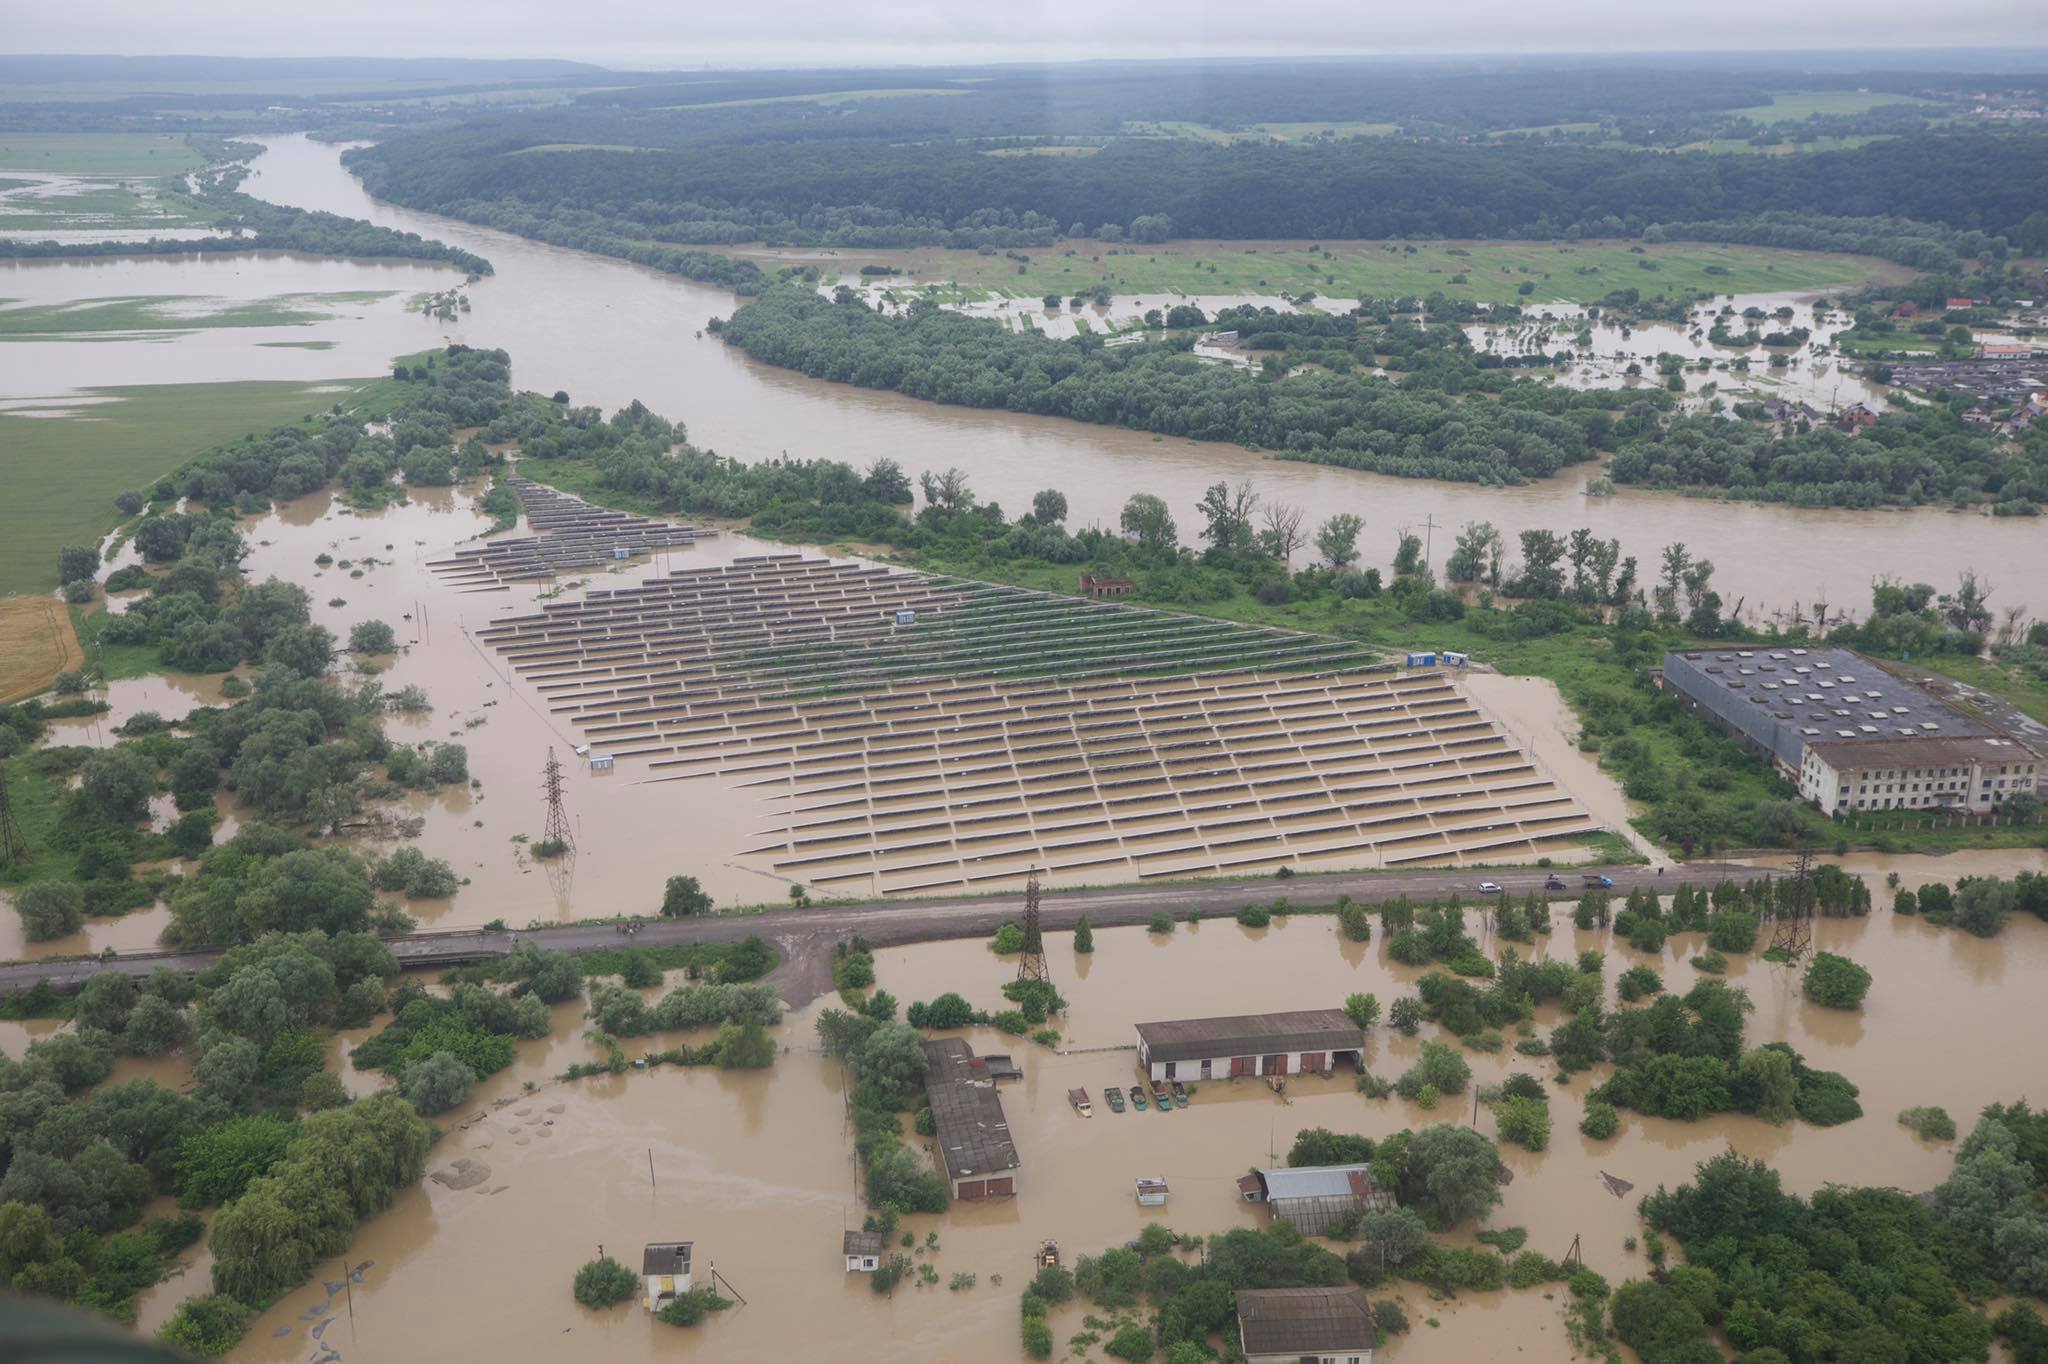 Наводнение Ивано-Франковская область